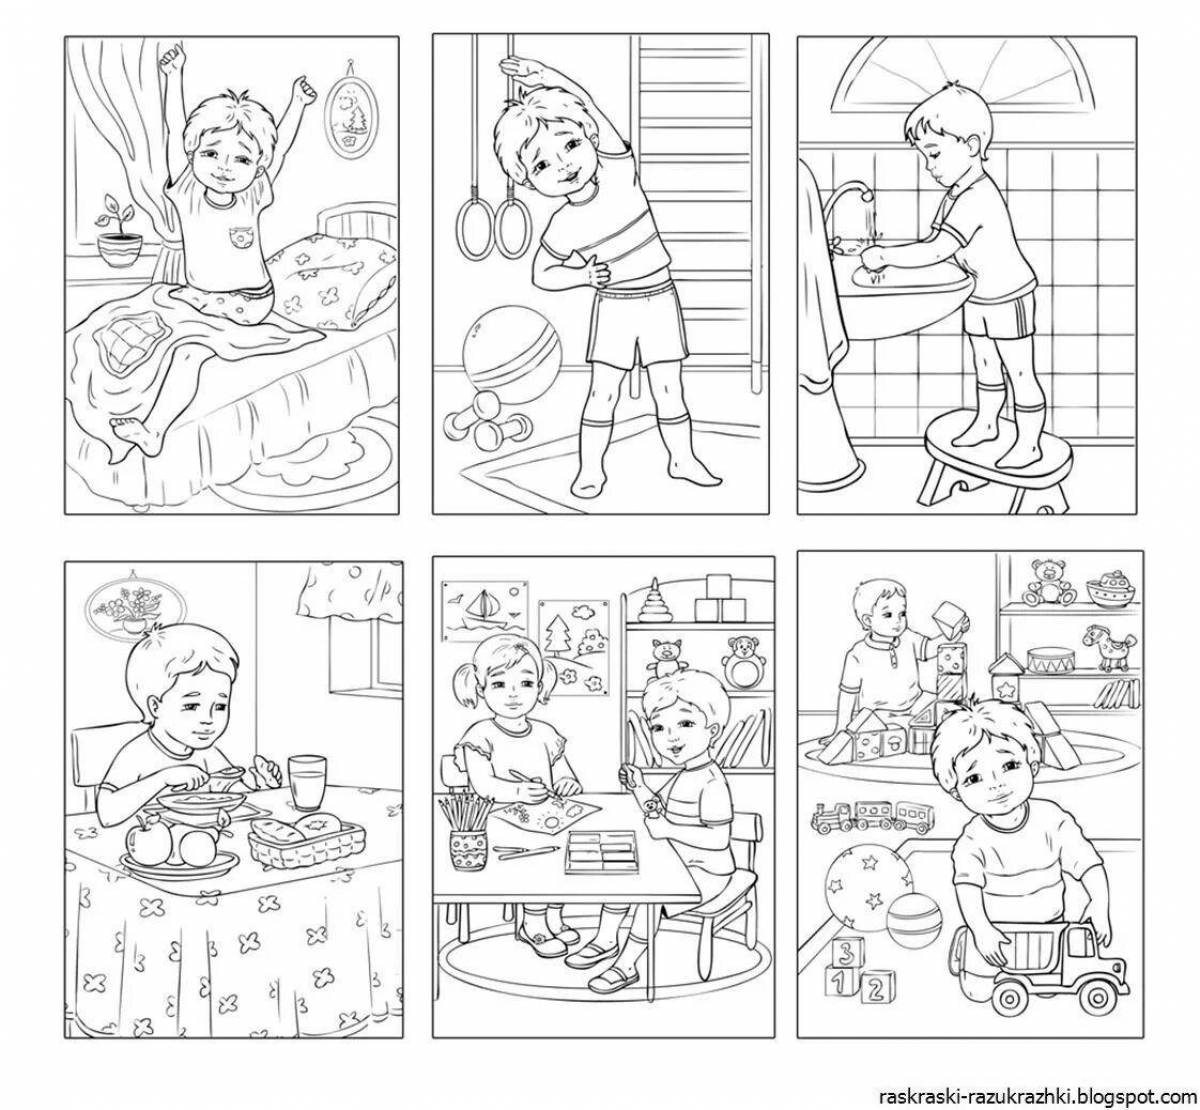 Color-frenzy healthy preschool coloring page